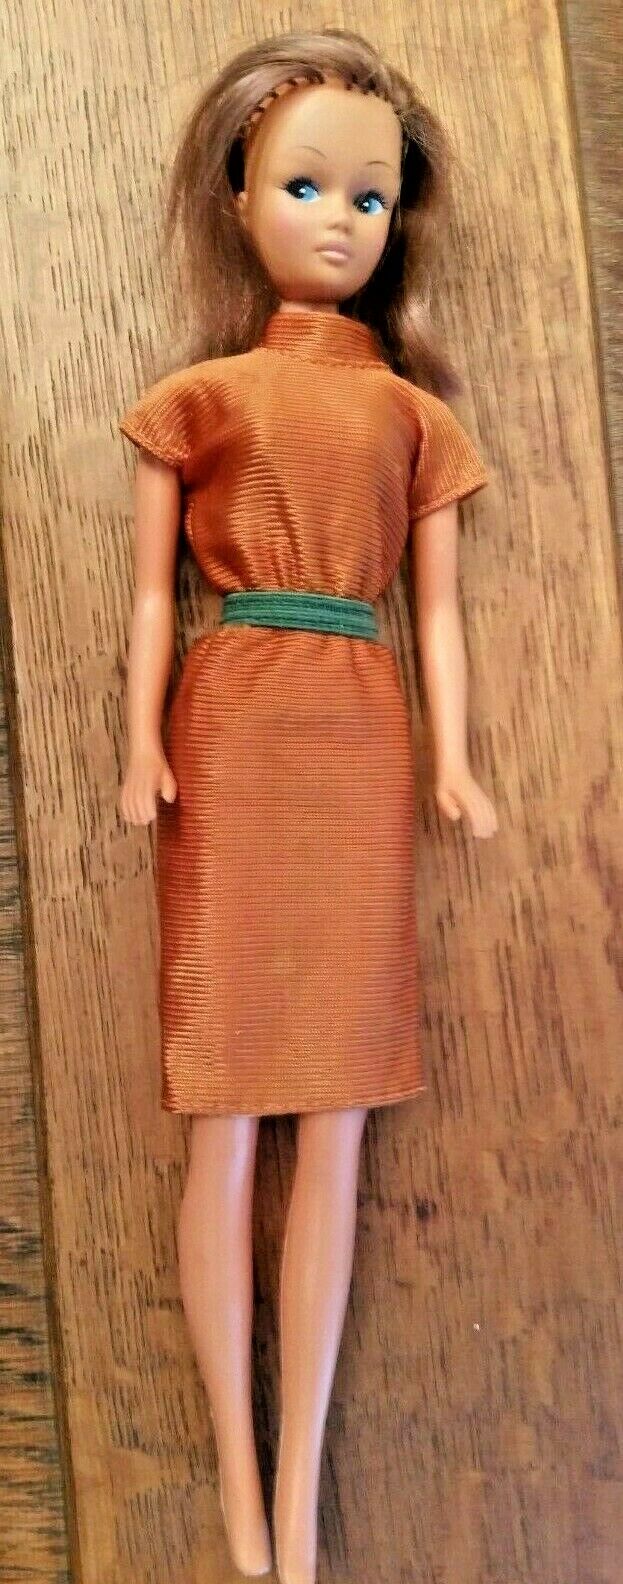 Vintage Malibu Barbie Clone in Clone Dress Excellent!